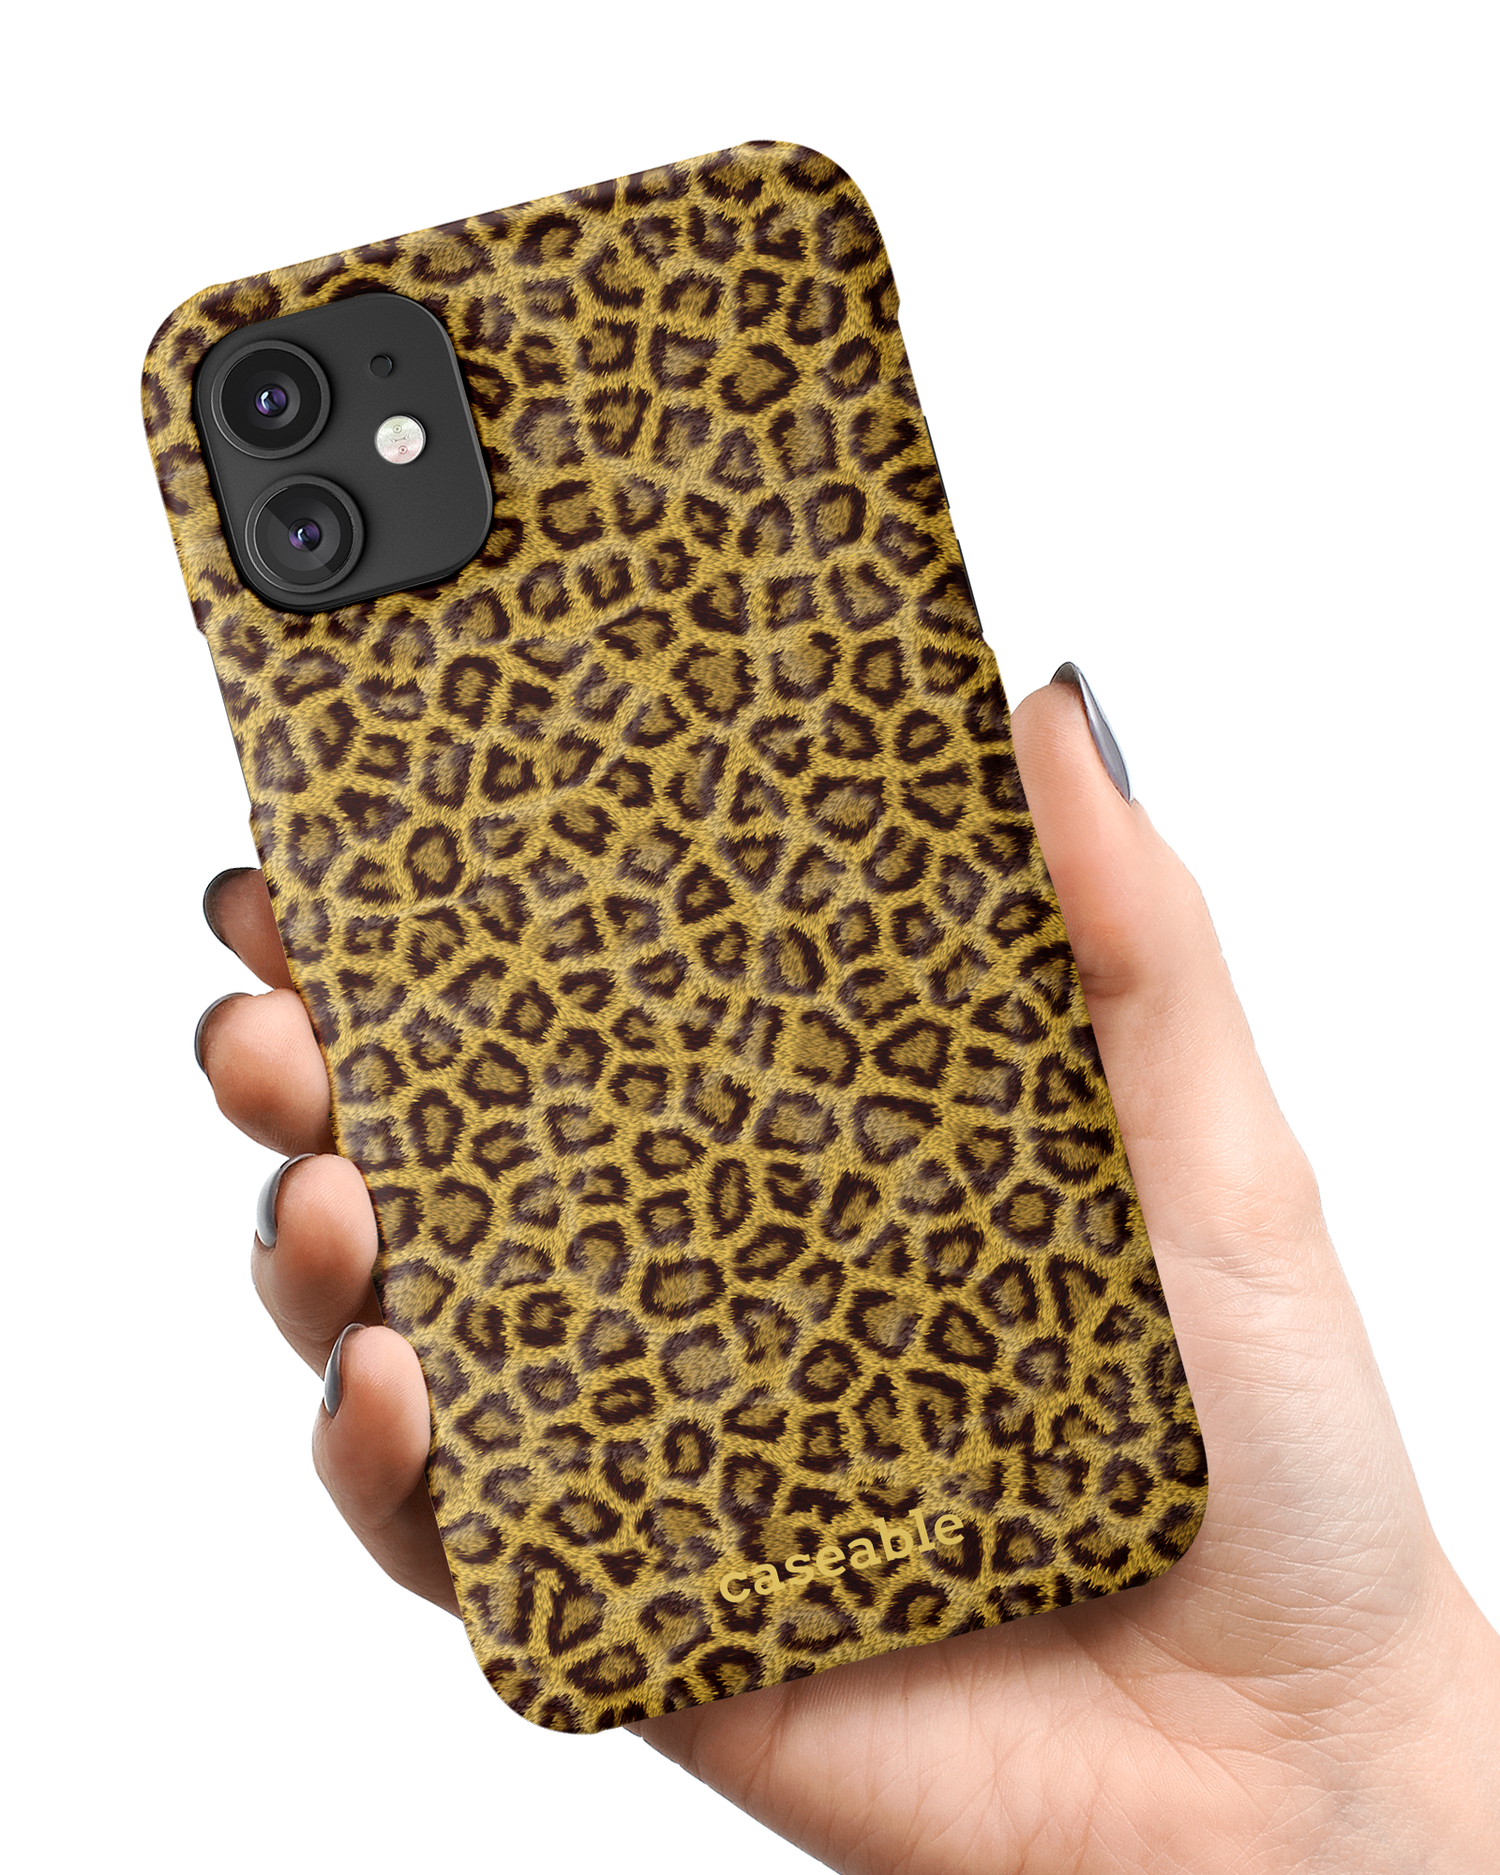 Leopard Skin Hardcase Handyhülle Apple iPhone 11 in der Hand gehalten